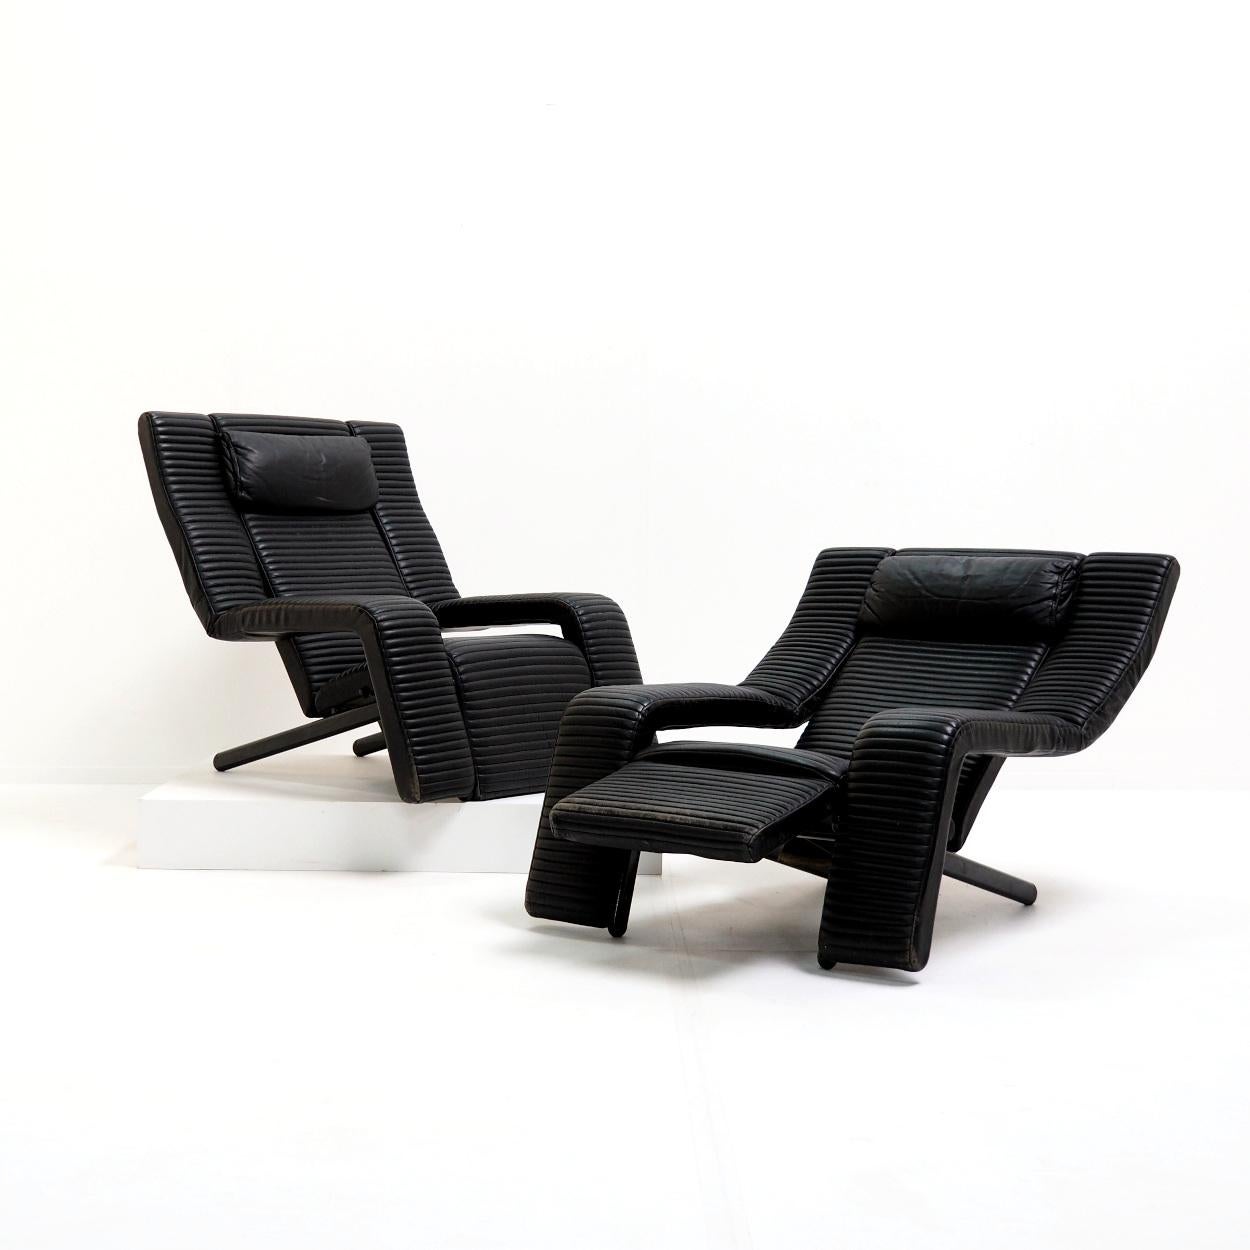 Postmoderner Satz verstellbarer Loungesessel, entworfen 1985 von Tittina Ammannati & Giampiero Vitteli. Die Sitze sind mit schwarzem Leder gepolstert und haben eine robuste Metallstruktur, die es ermöglicht, die Sitze zu verstellen und eine